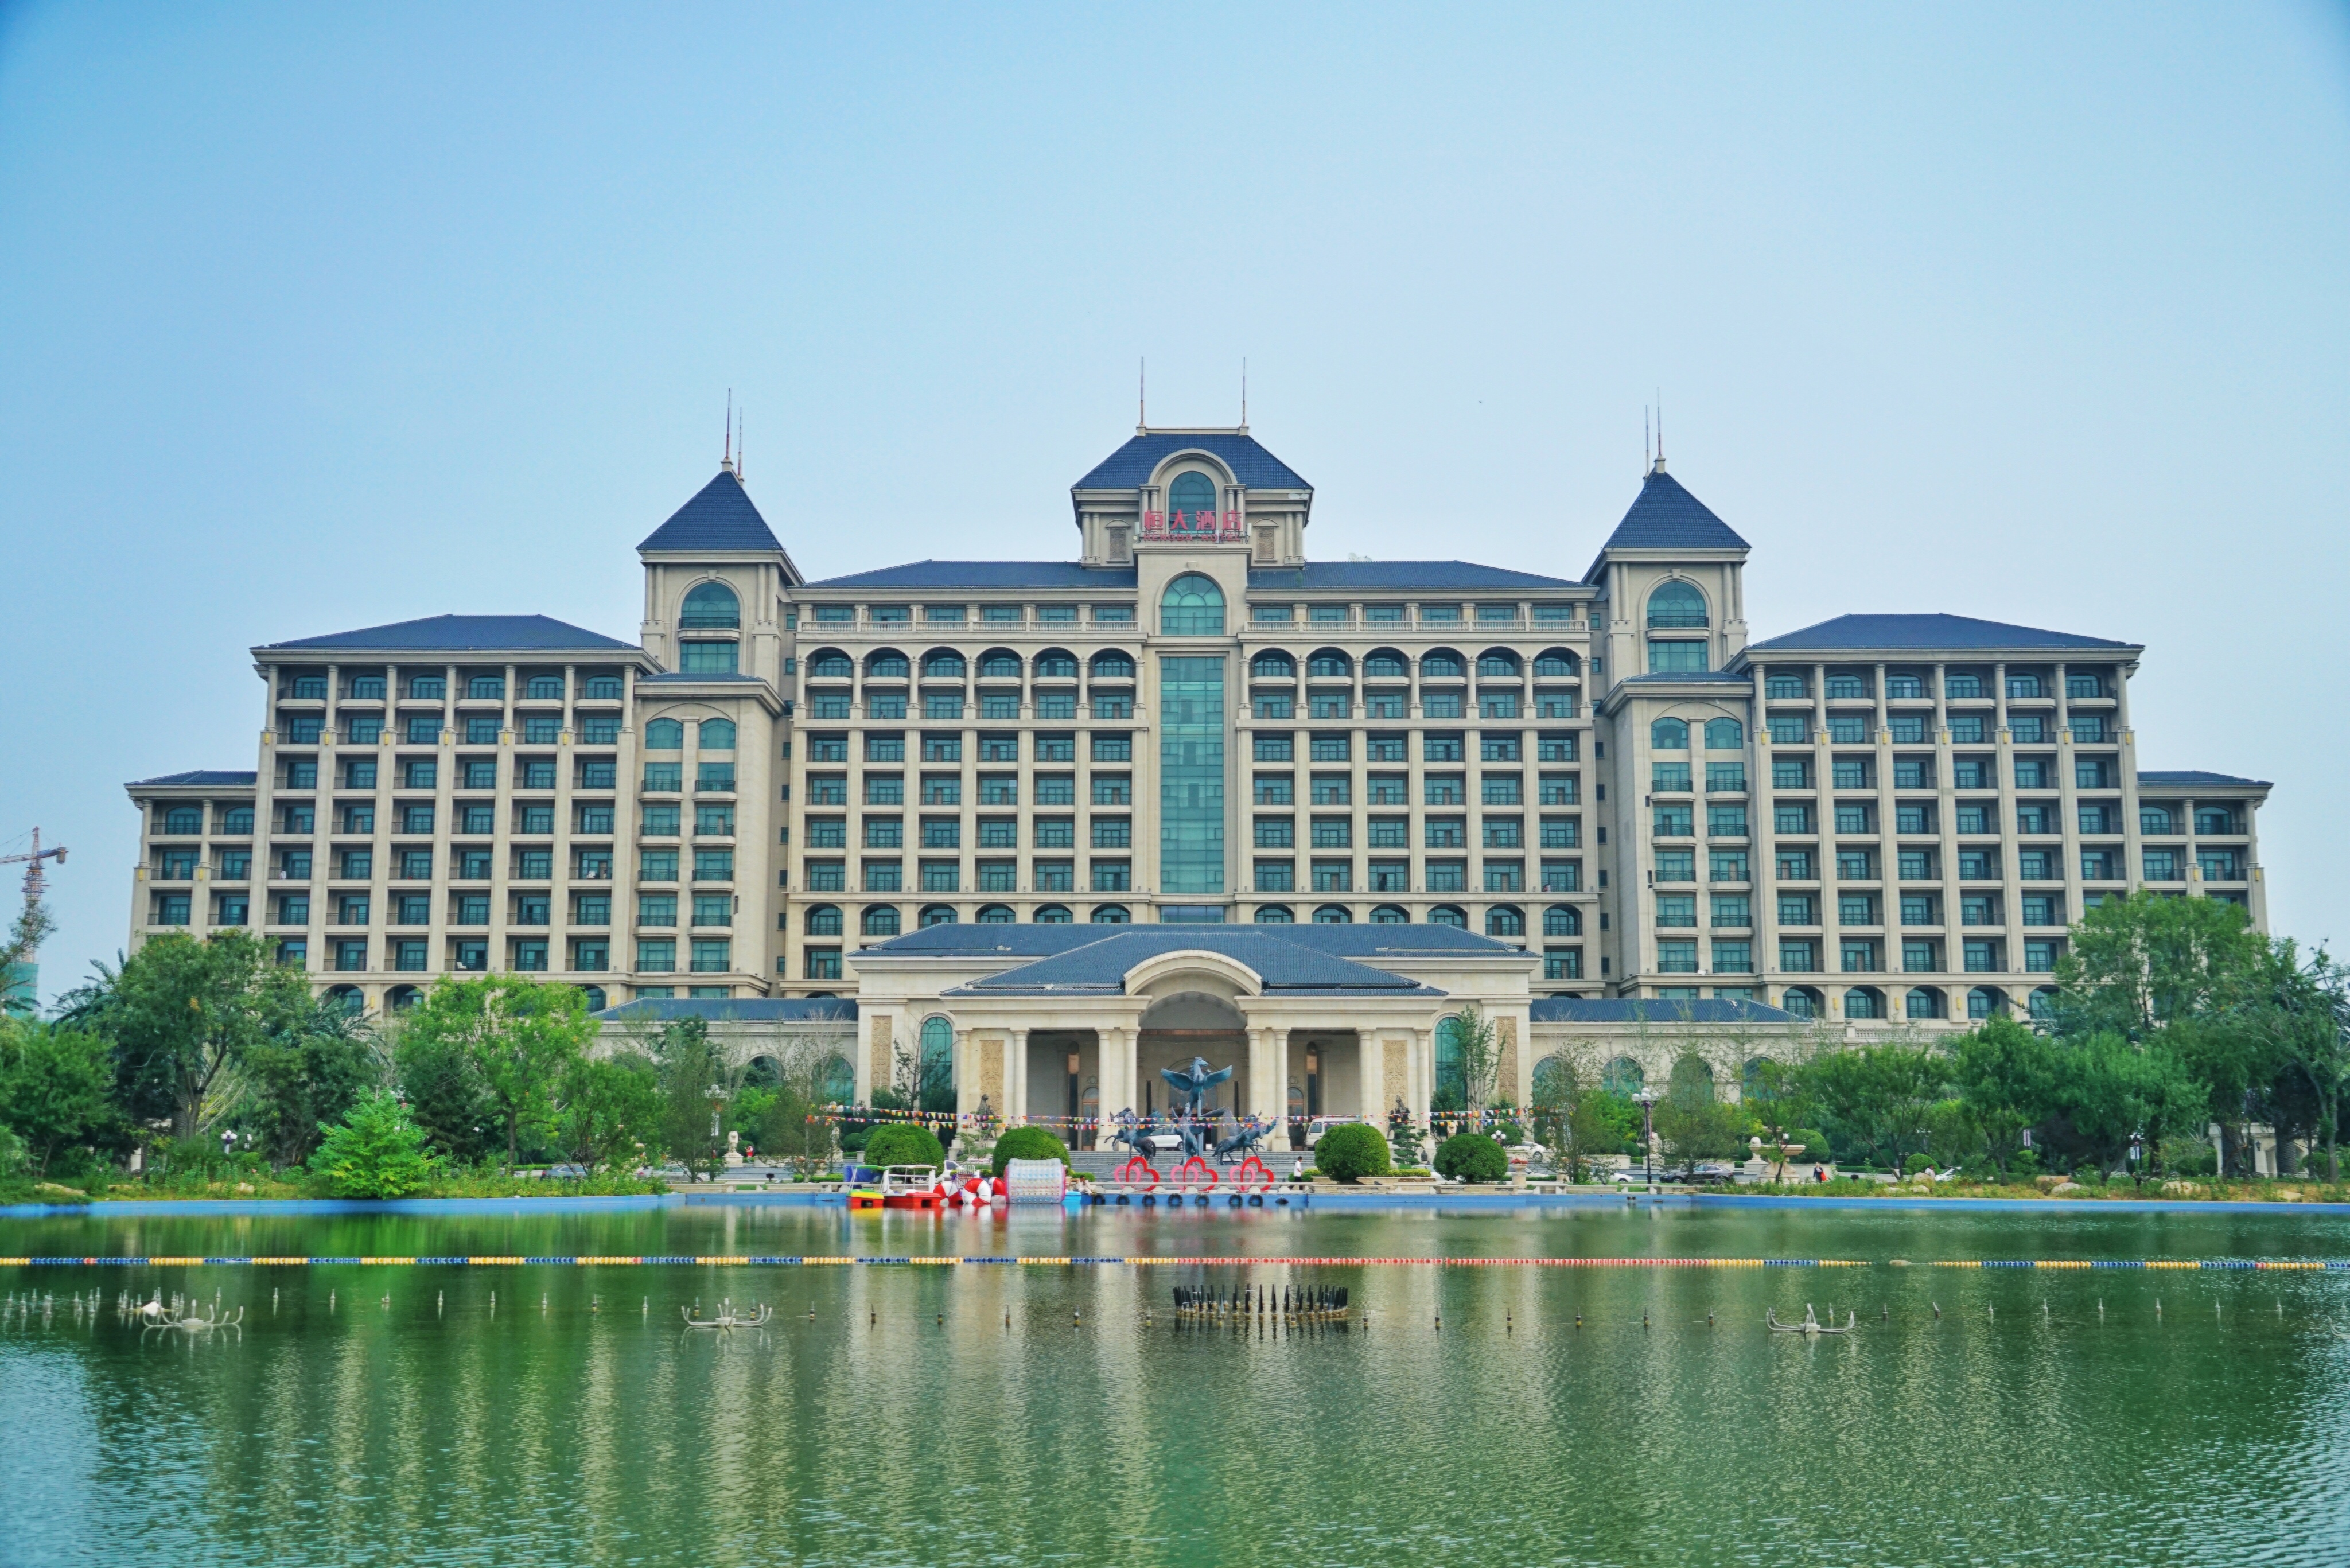 下午三点我就抵达了天津东丽湖恒大酒店